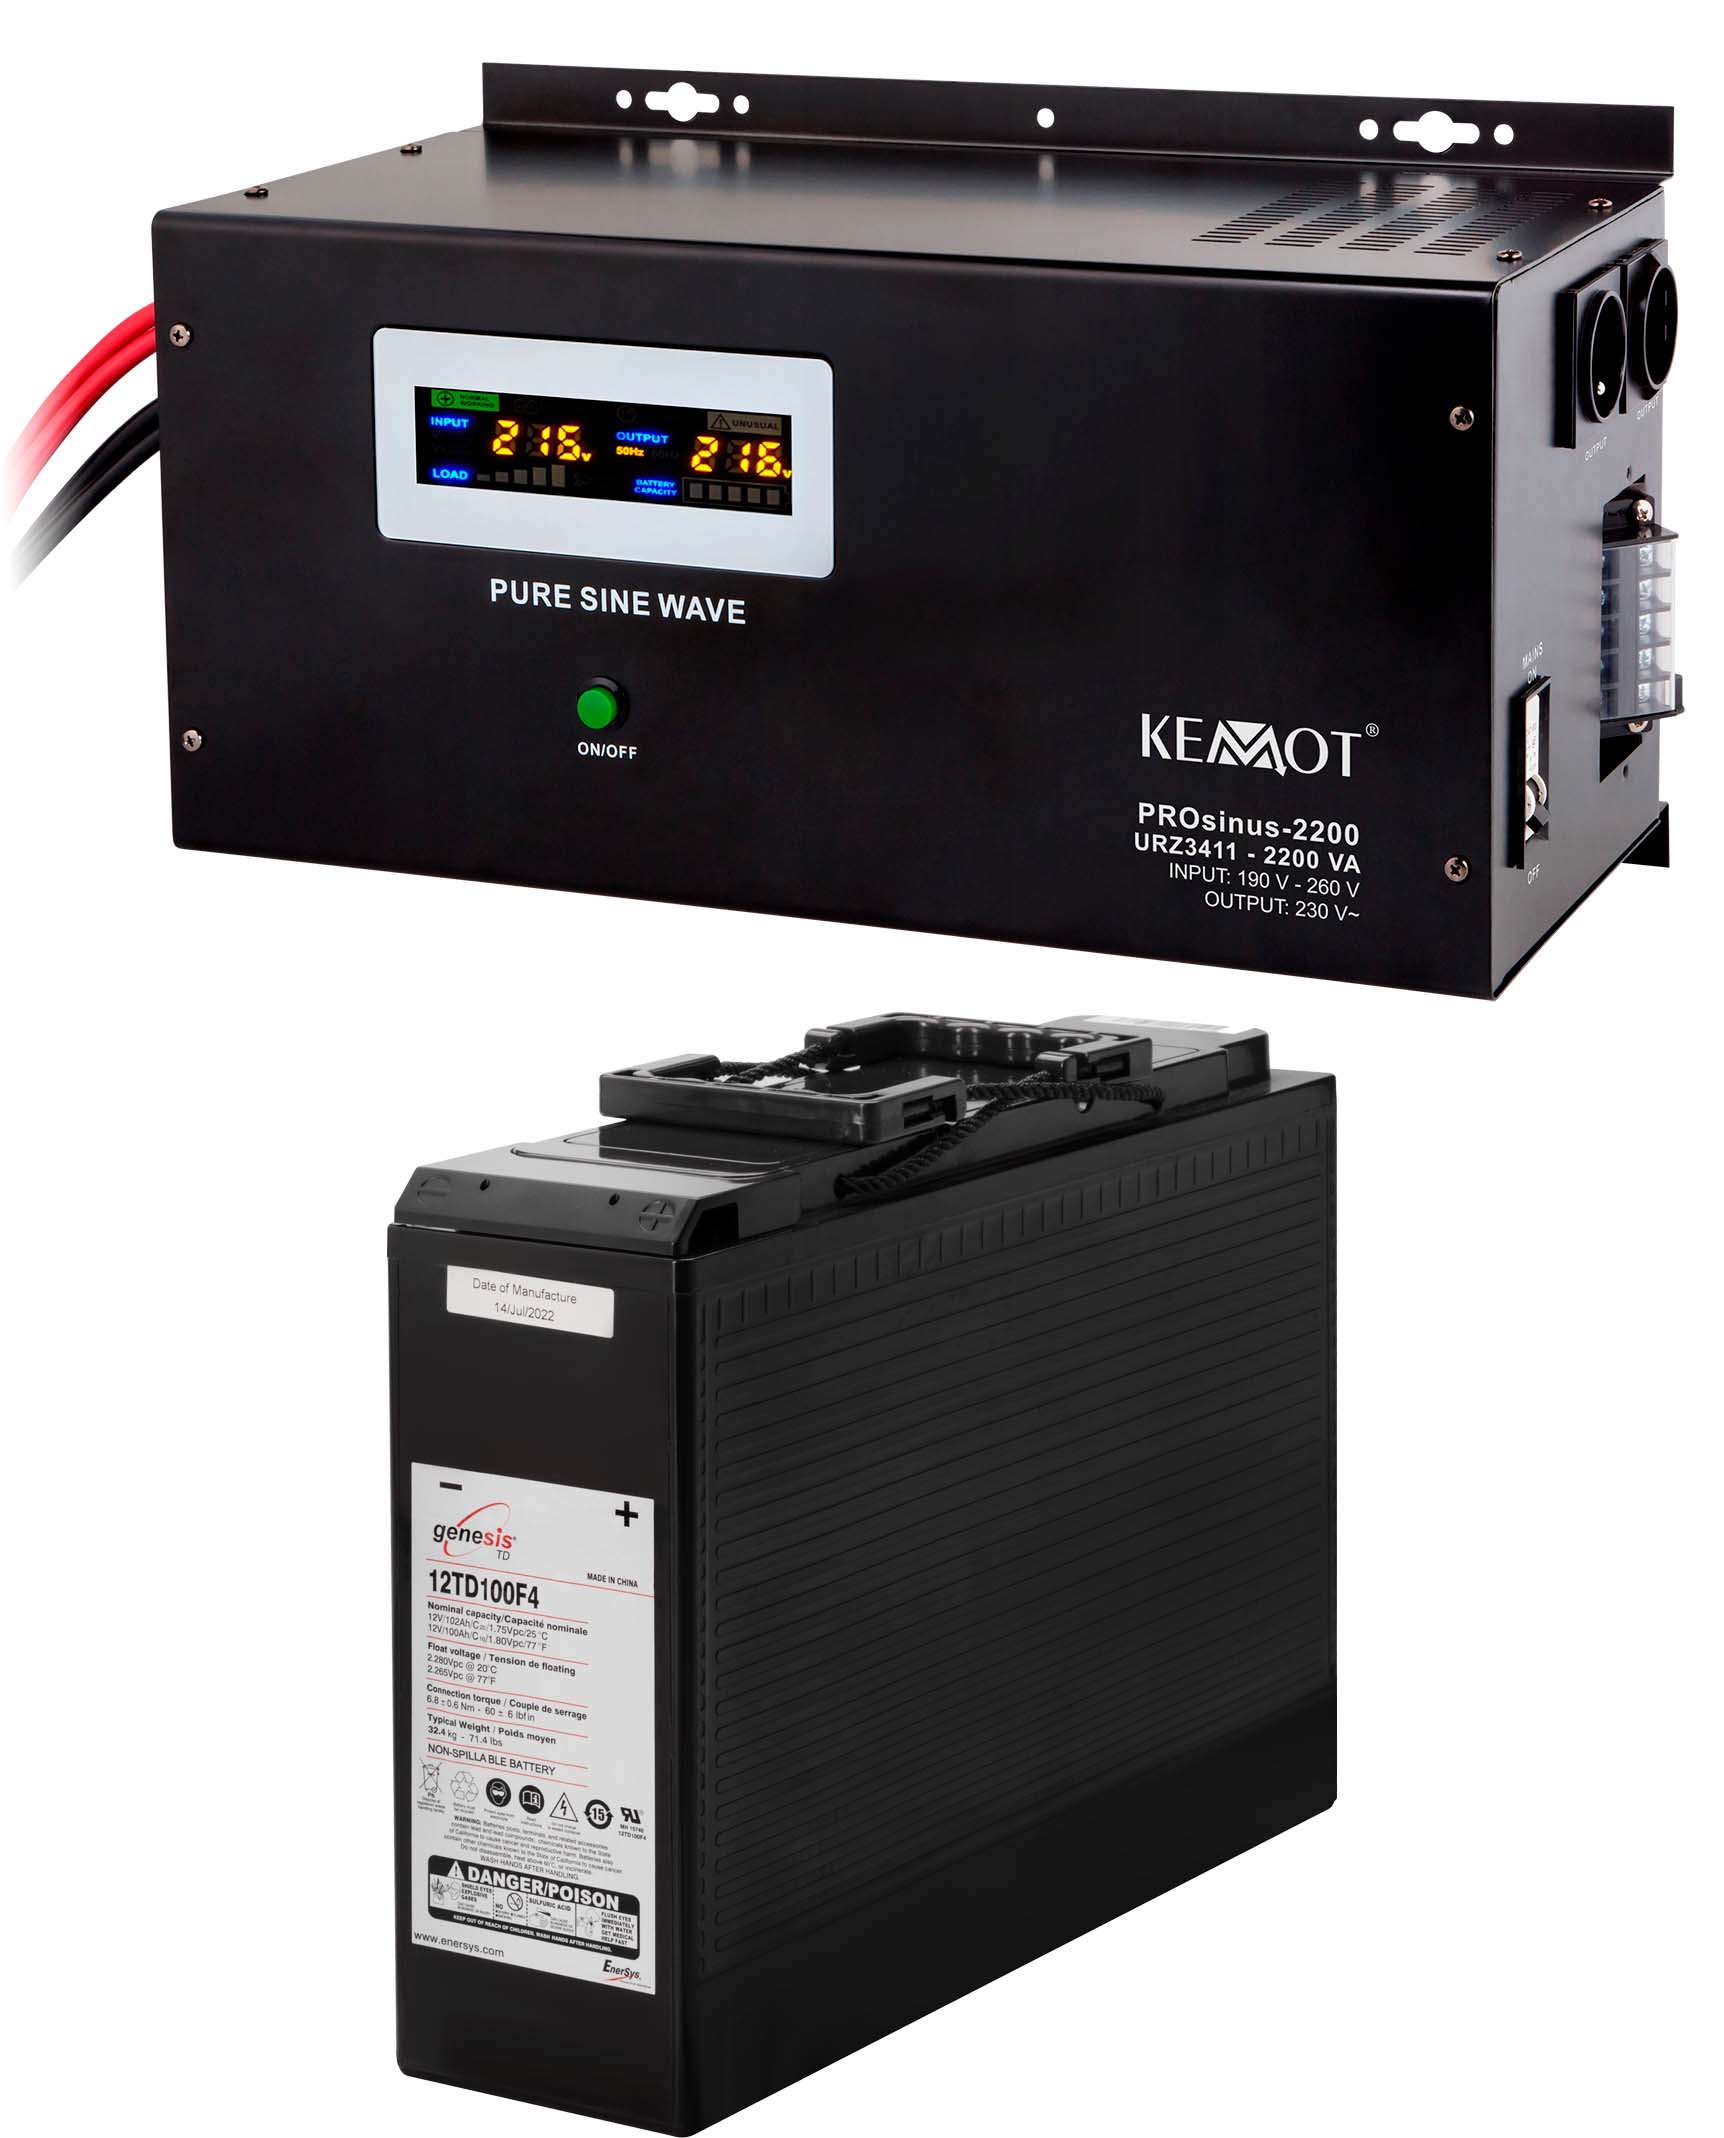 Источник бесперебойного питания Kemot PROSinus-2200 (URZ3411)+аккумулятор Genesis 12TD100F4 (12V100Ah)